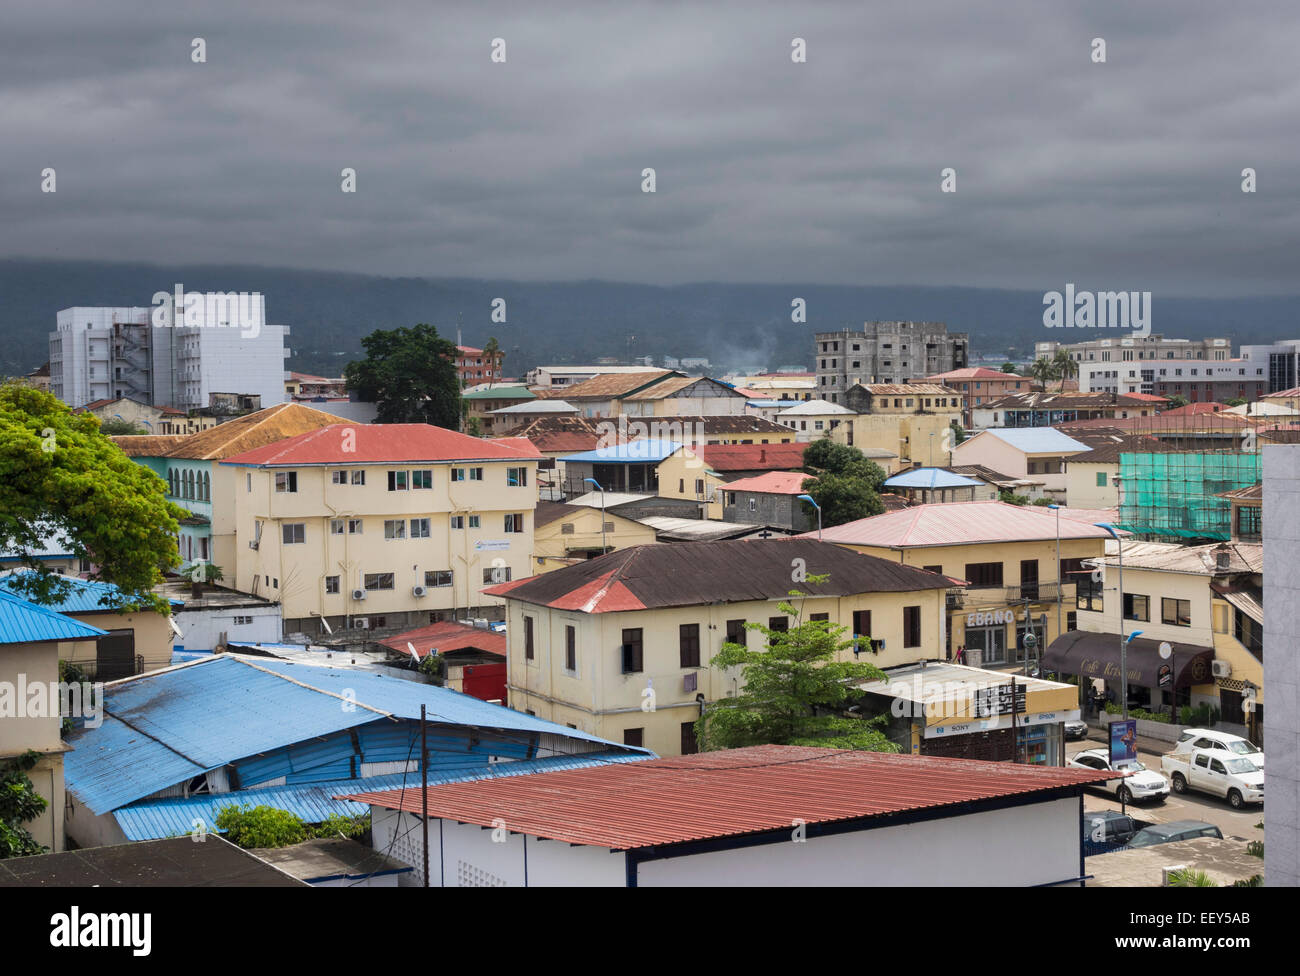 Vue sur les toits de la ville de Malabo, Guinée équatoriale, Afrique de l'ouest avec un temps orageux Banque D'Images